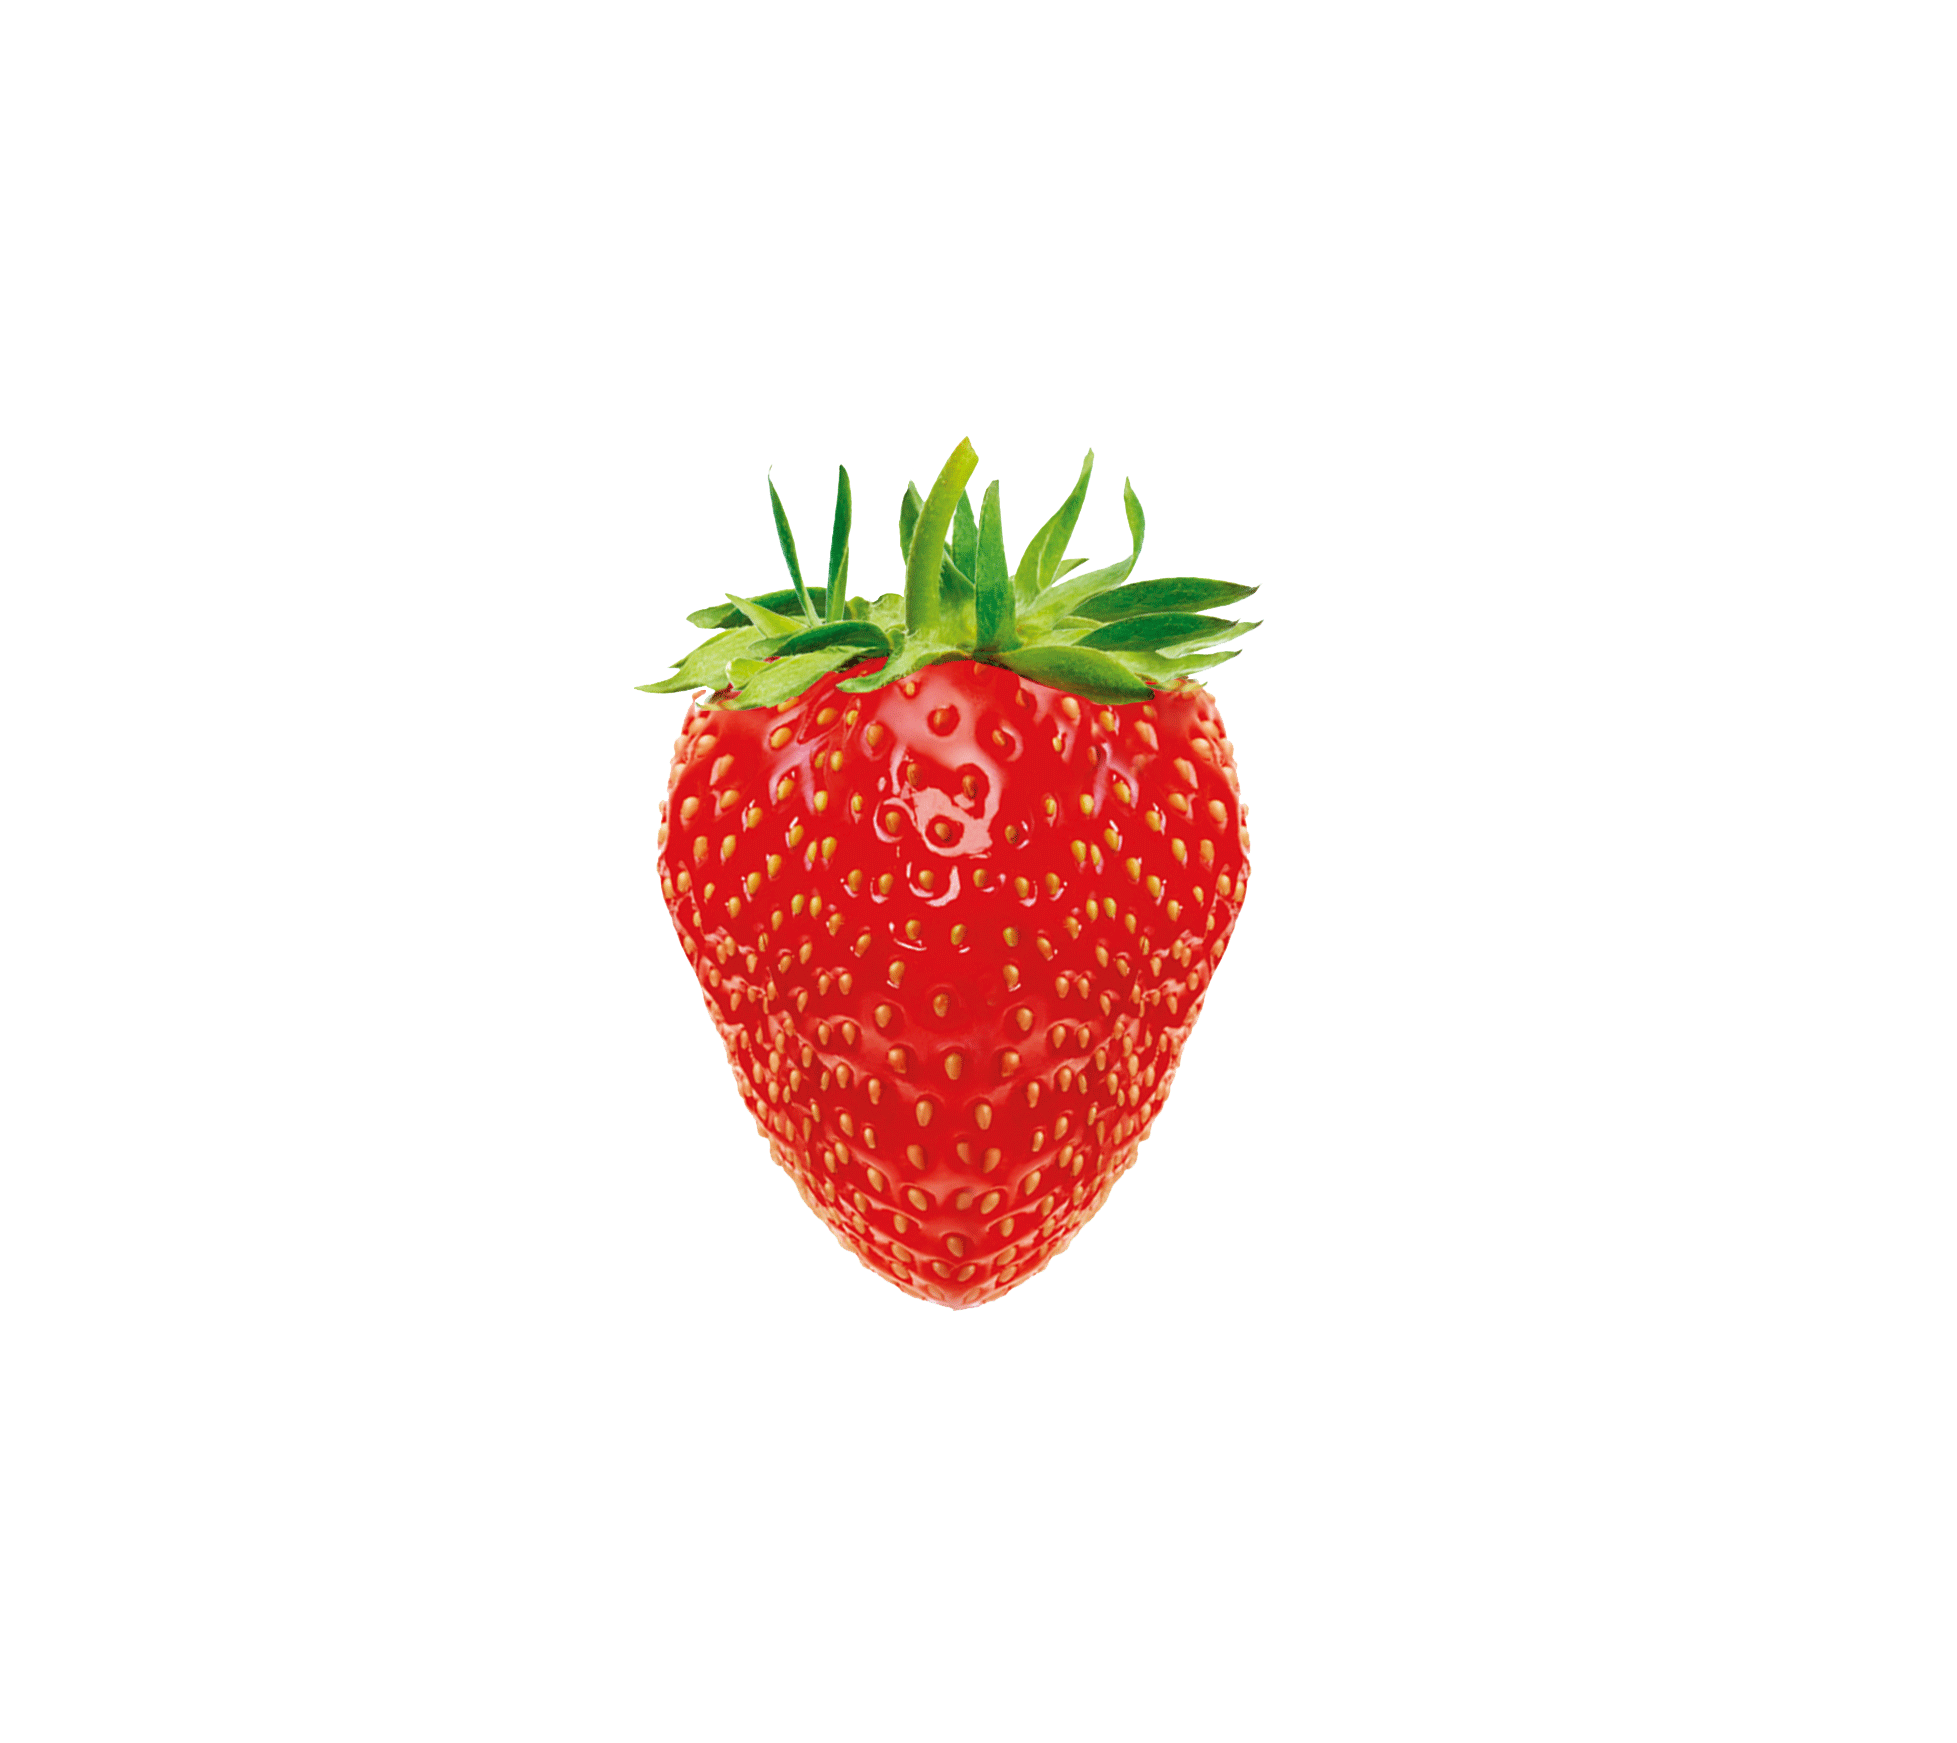 西瓜,西瓜片,果汁,草莓,水果桌面壁纸高清大图预览1920x1080_水果壁纸下载_墨鱼部落格